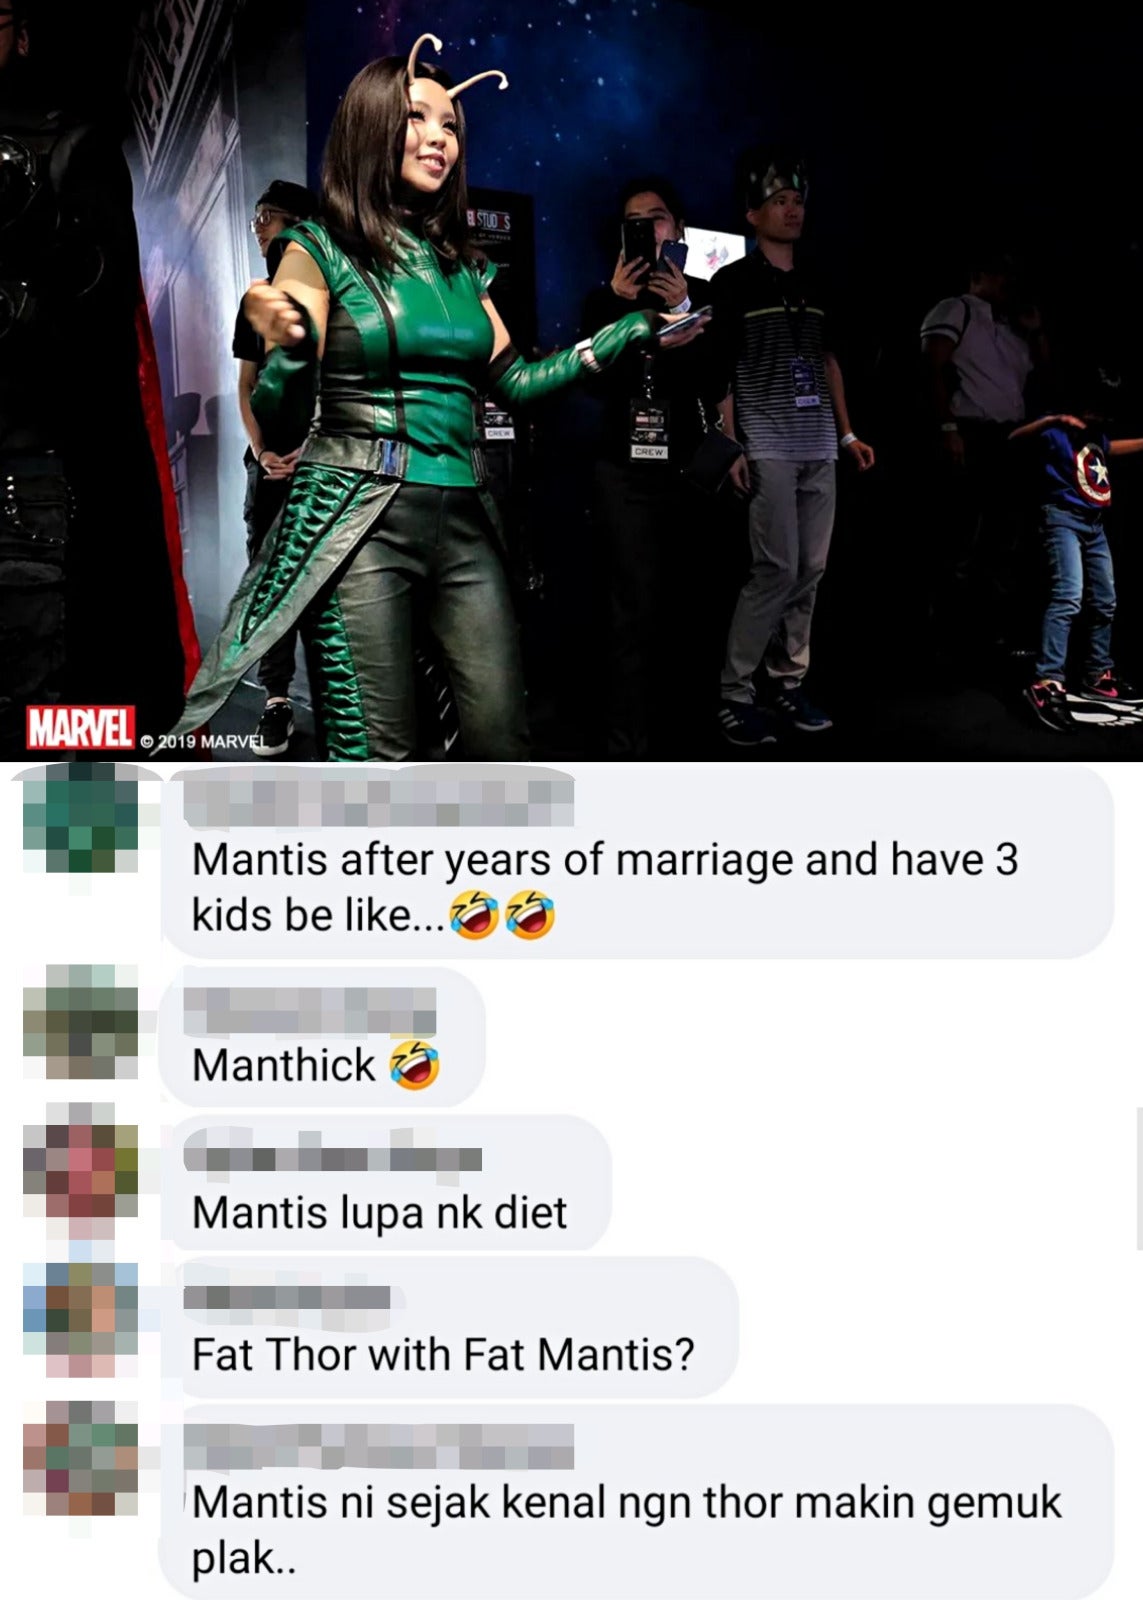 Micho as Mantis photo posted at Marvel FB